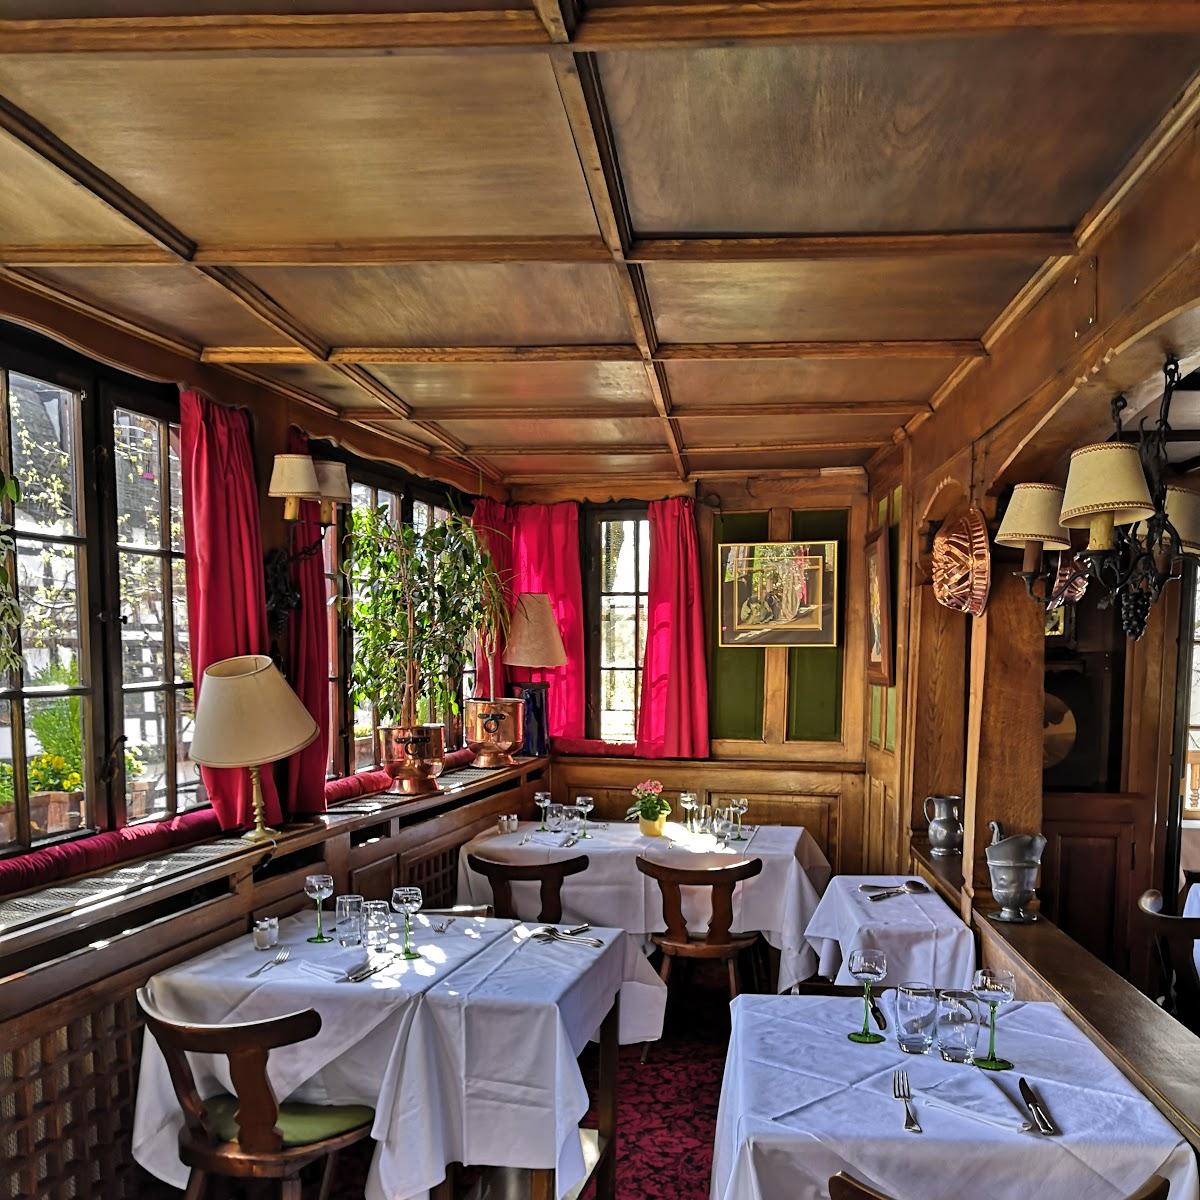 Restaurant "House of Tanners Restaurant" in Strasbourg